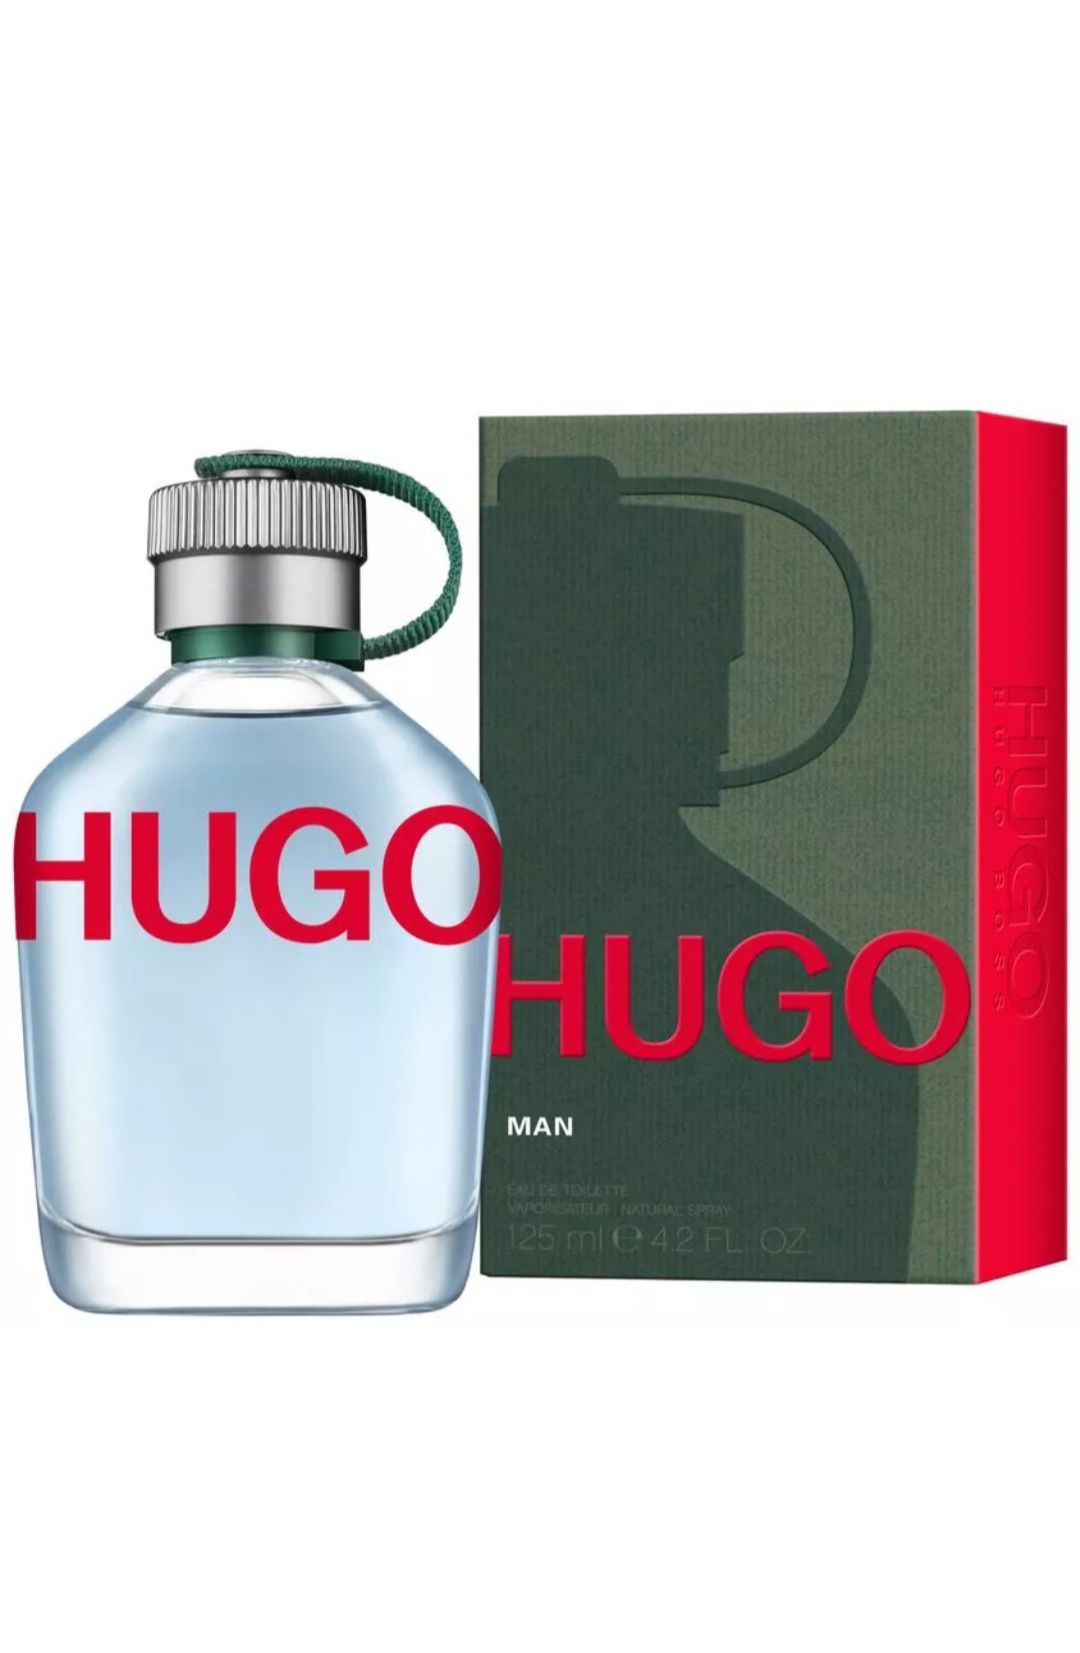 Hugo Man, объем 75 мл. Оригинал.